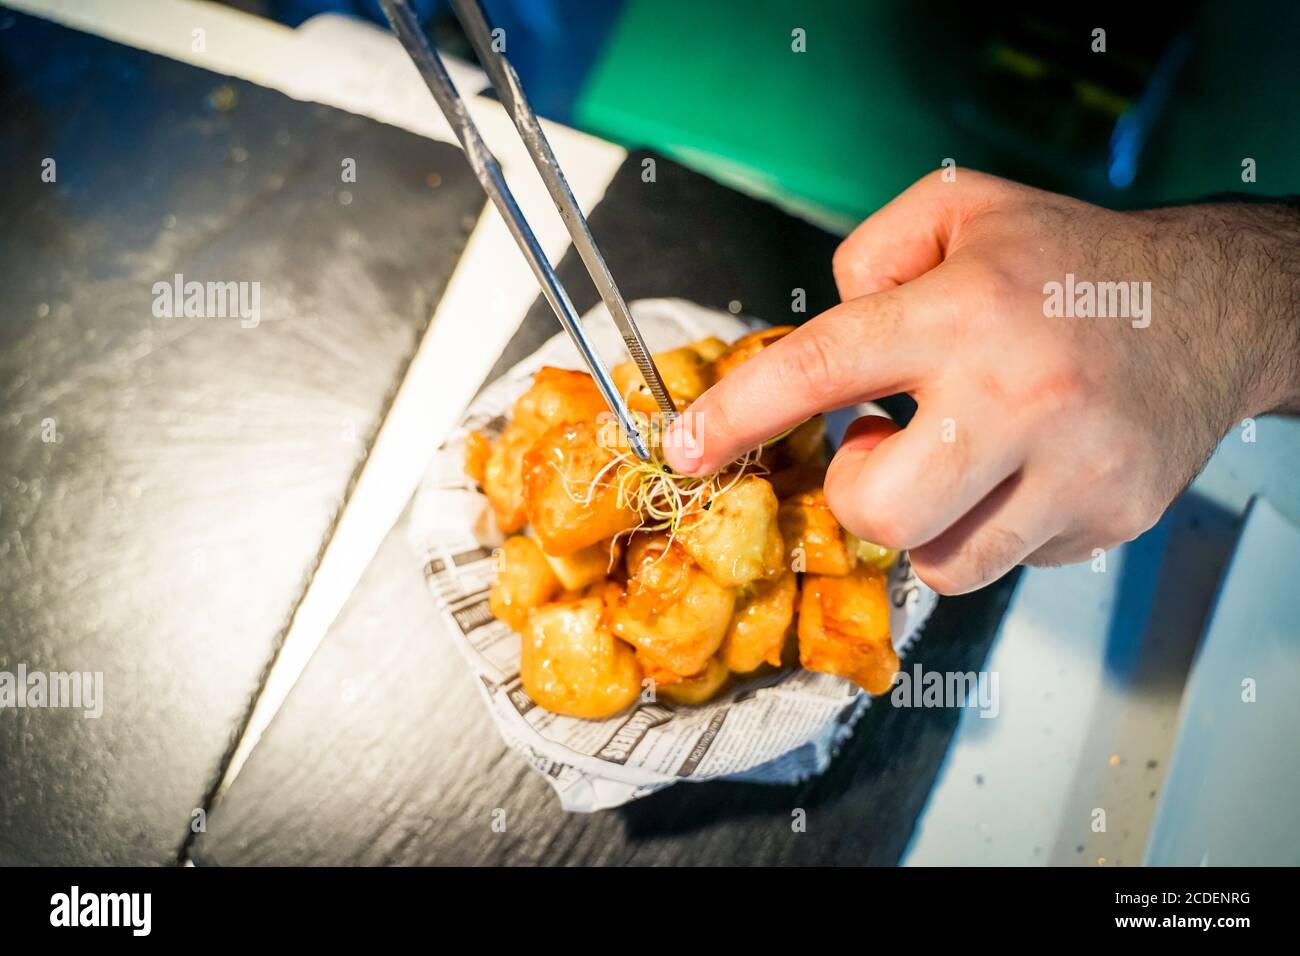 Lo chef prepara patatine fritte, sullo sfondo con un giornale. Preparazione di alimenti gustosi ma nocivi - immagine. Foto Stock